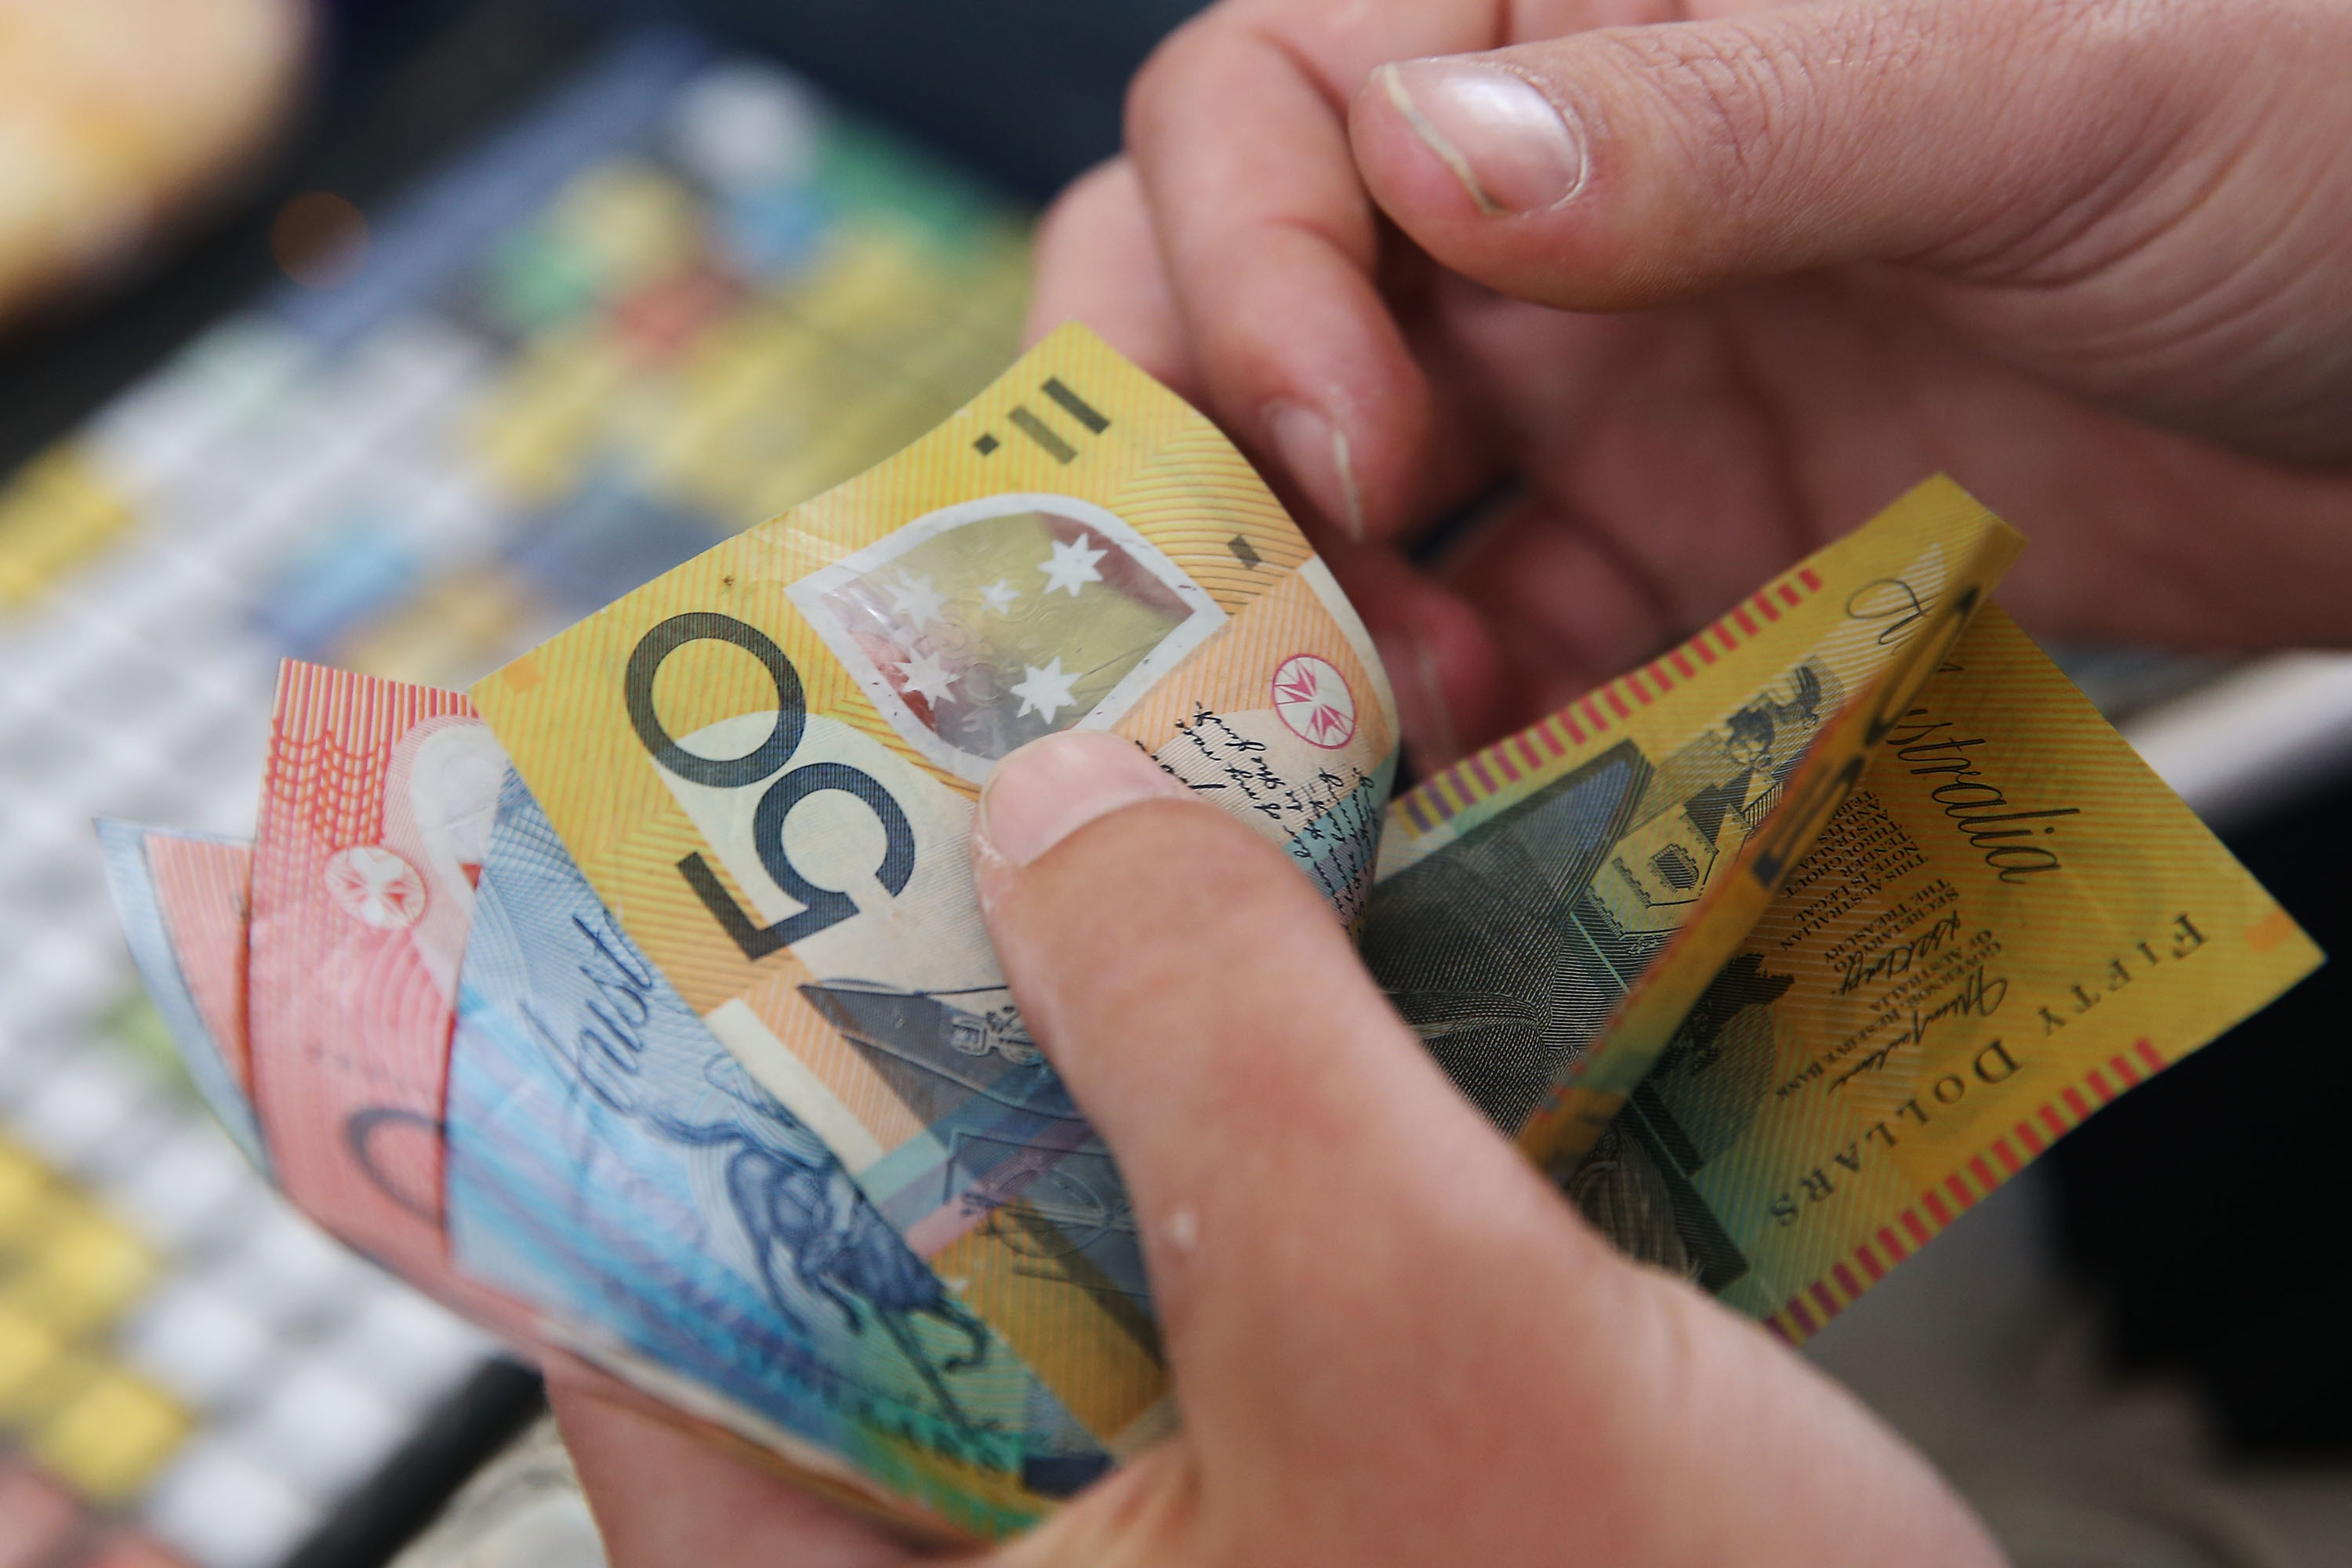 Bargeld-Verbot: Australien will 100-Dollar-Scheine abschaffen und Bargeldobergrenze